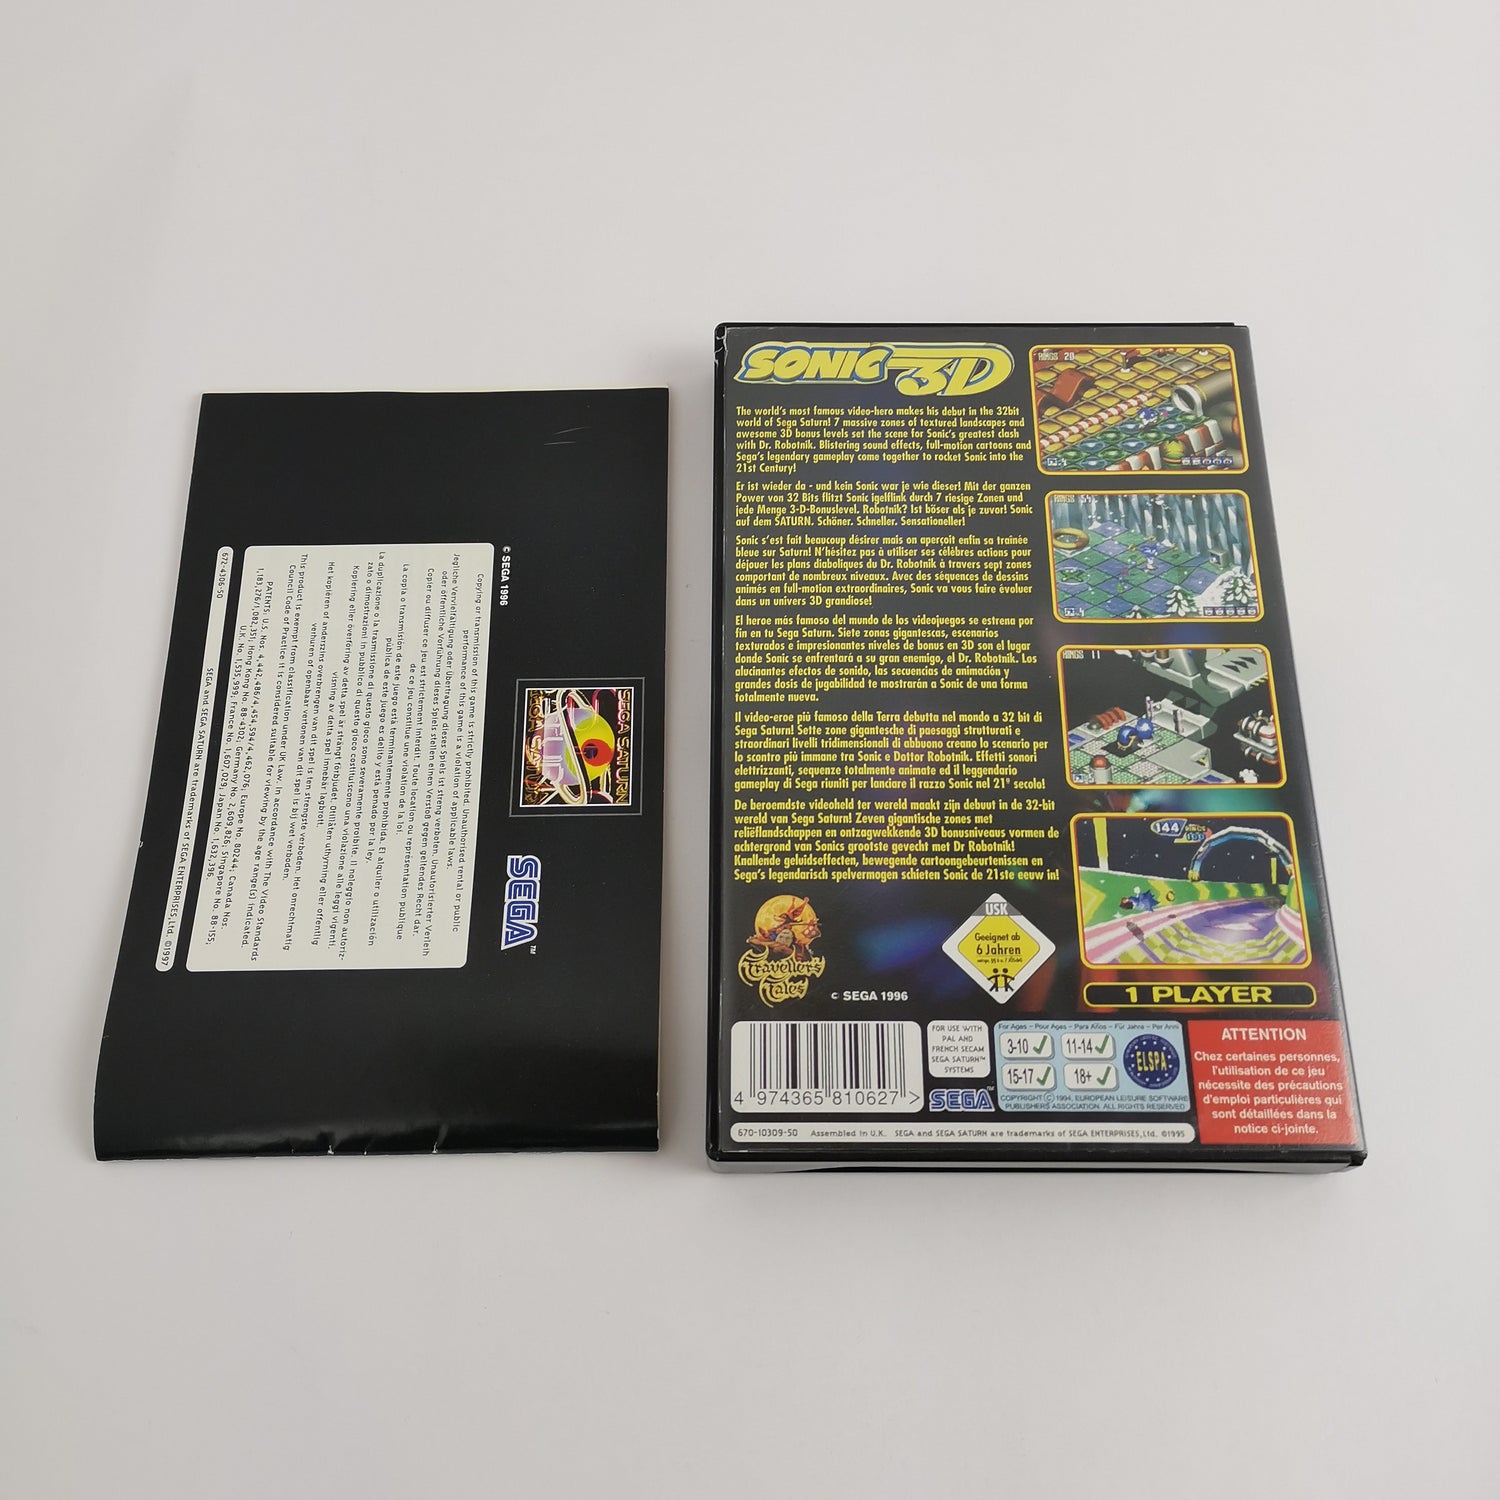 Sega Saturn Game: Sonic 3D Flickies Island | SegaSaturn PAL - original packaging